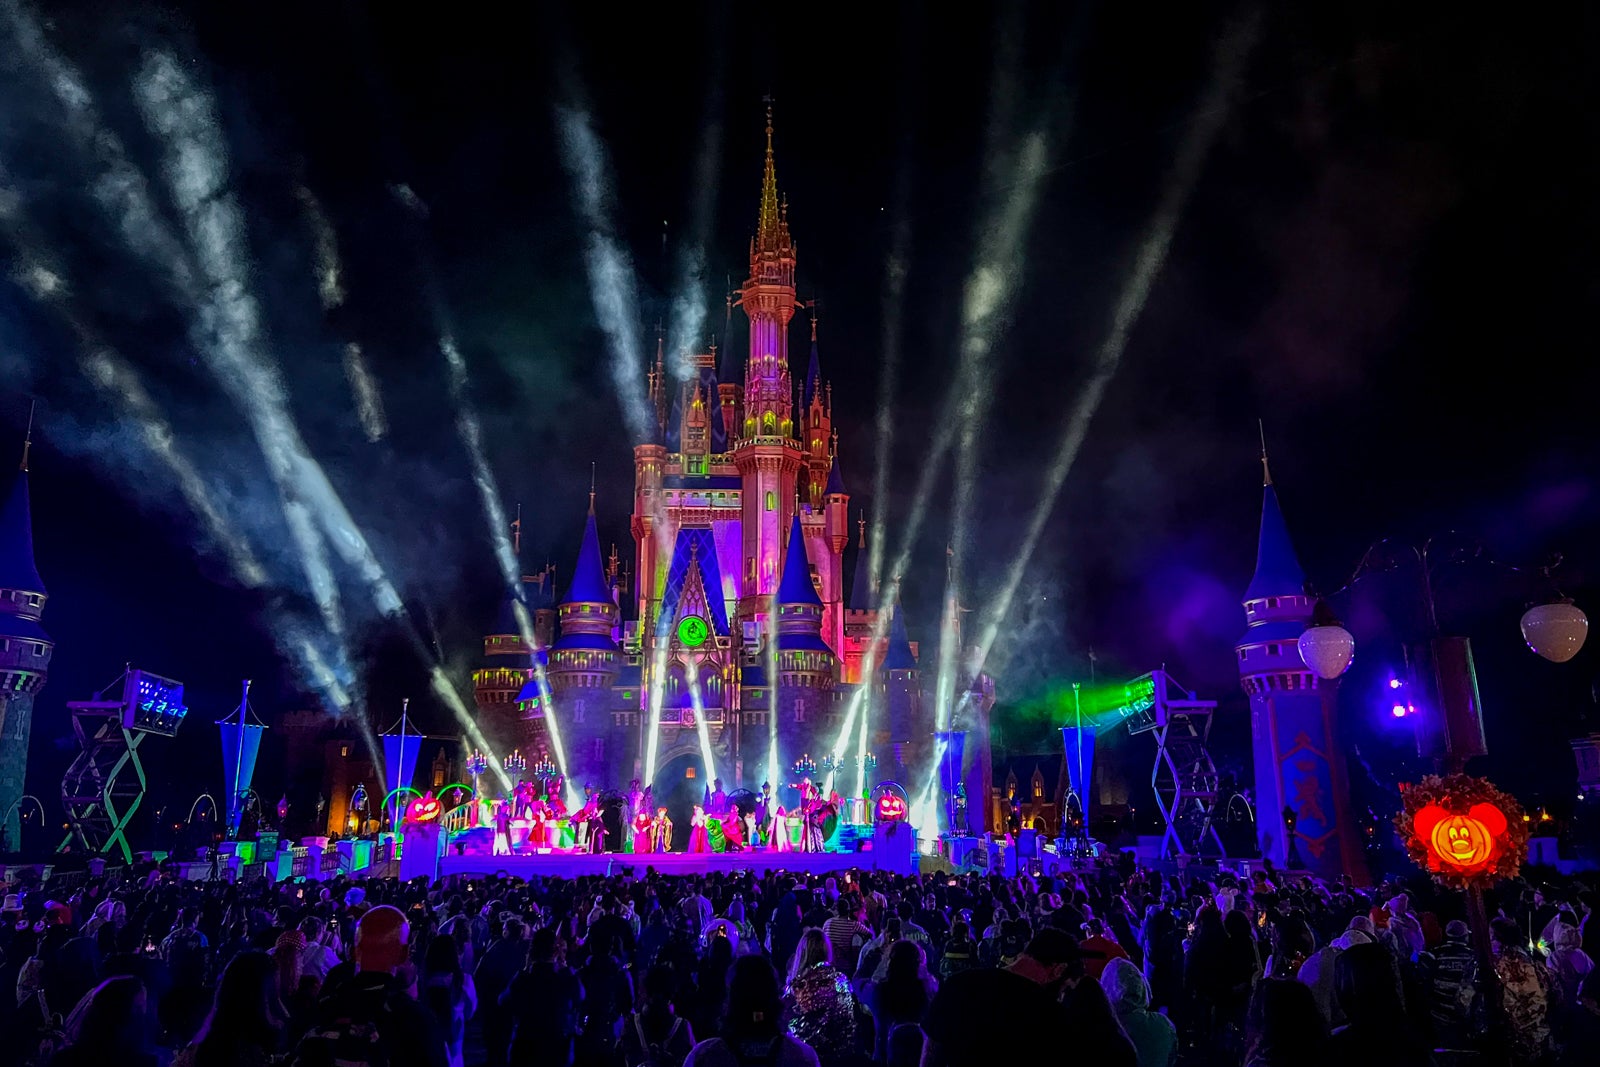 Cinderella Castle lit up for Halloween